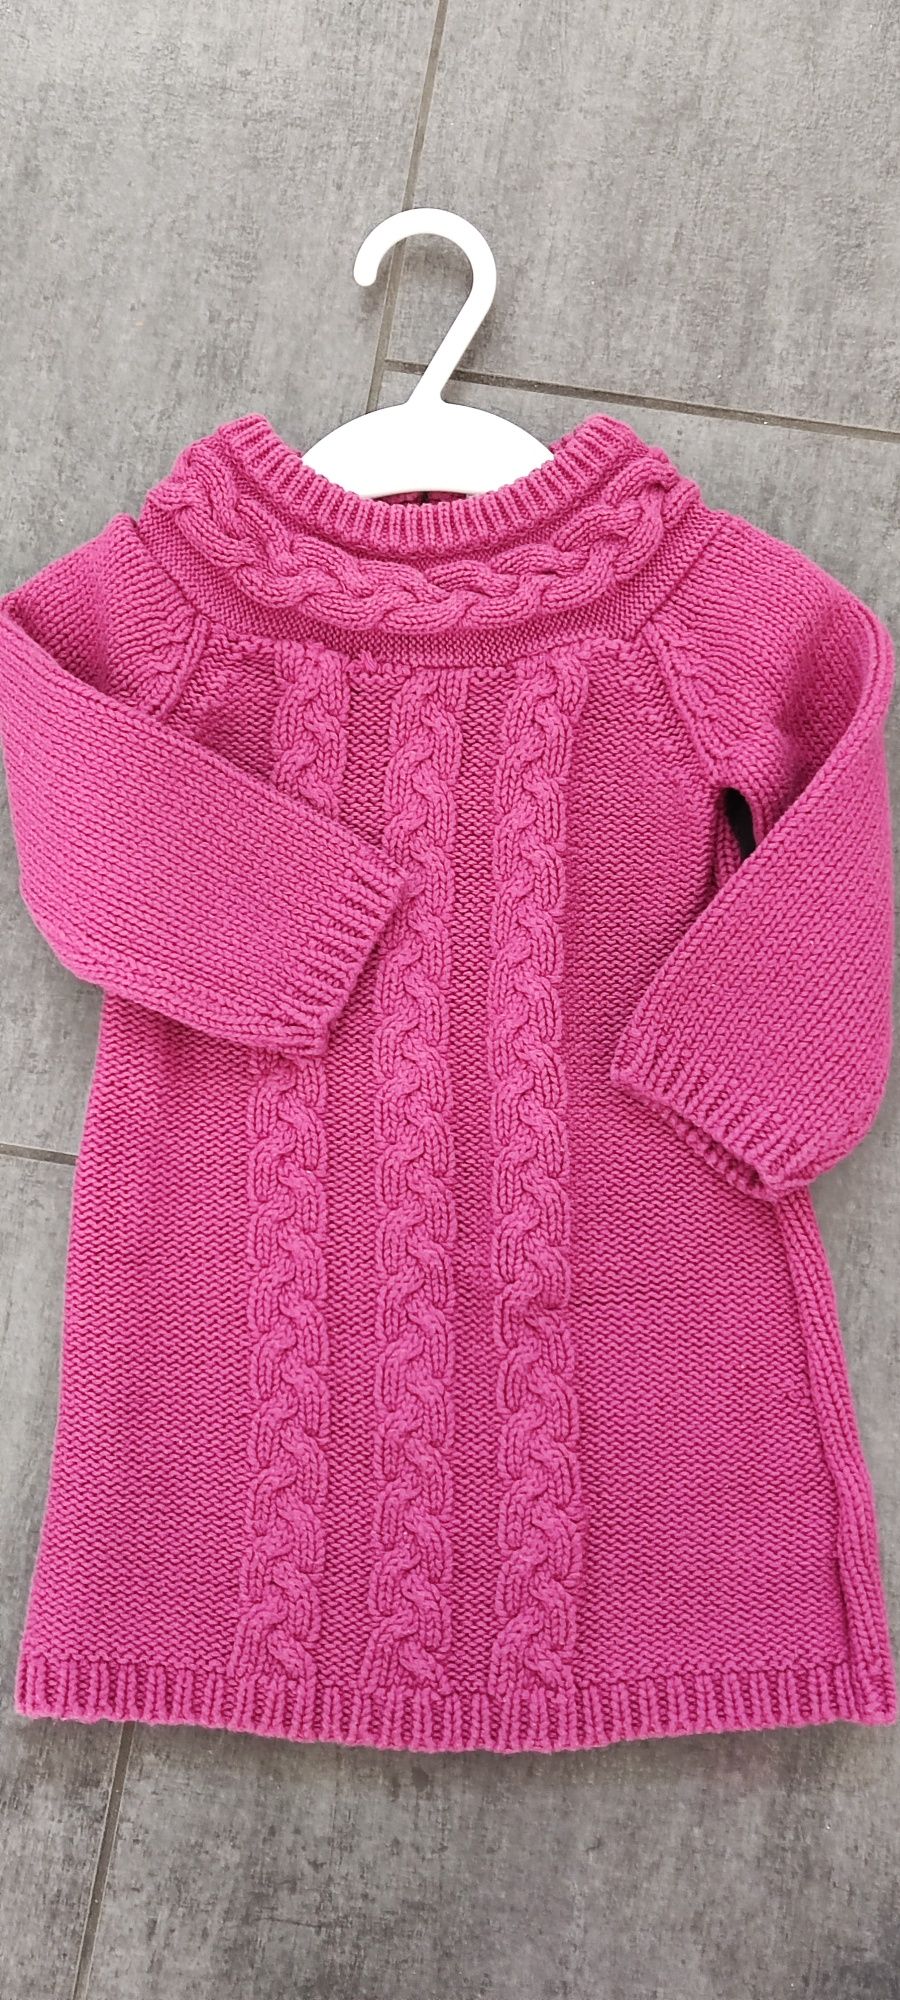 Sweterek, tunika, sukienka dzianinowa F&F, rozmiar 86 (12-18 miesięcy)